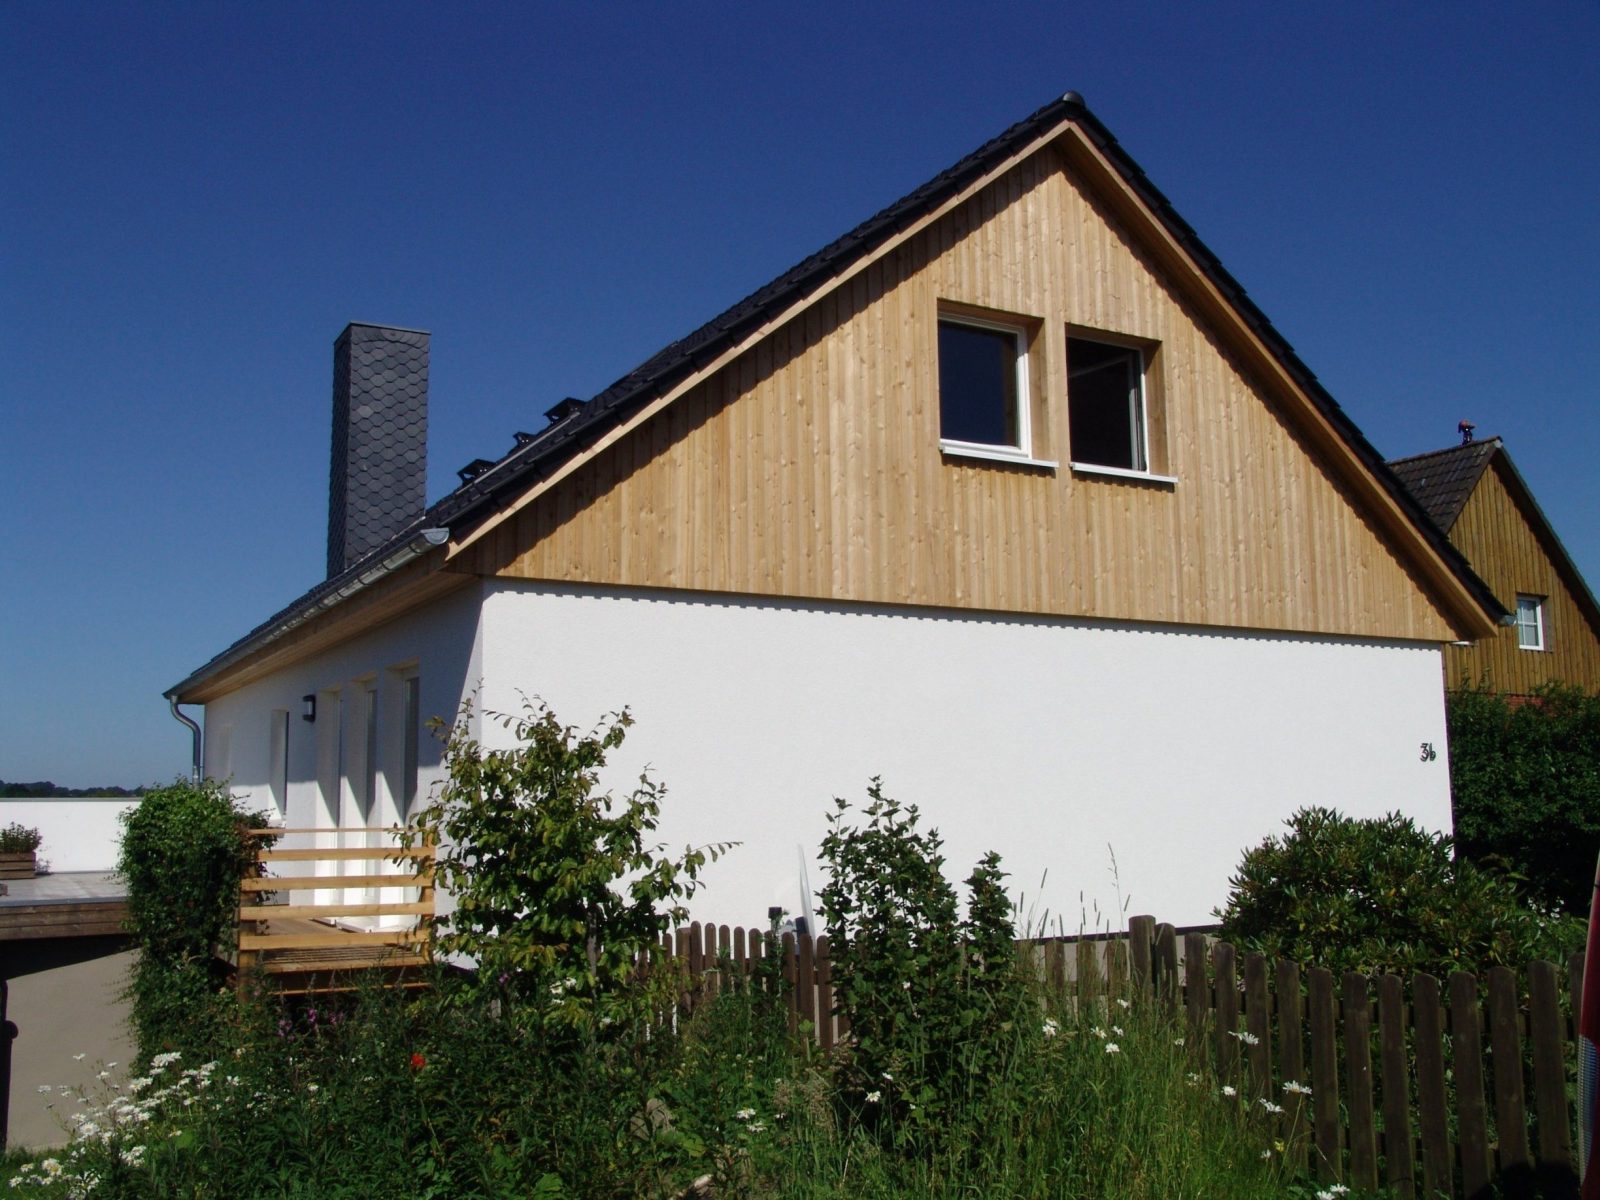 Stilvolle Okal Haus Sanierung Fertighaussanierung Kiel Streif von Okal Fertighaus Sanierung Kosten Bild